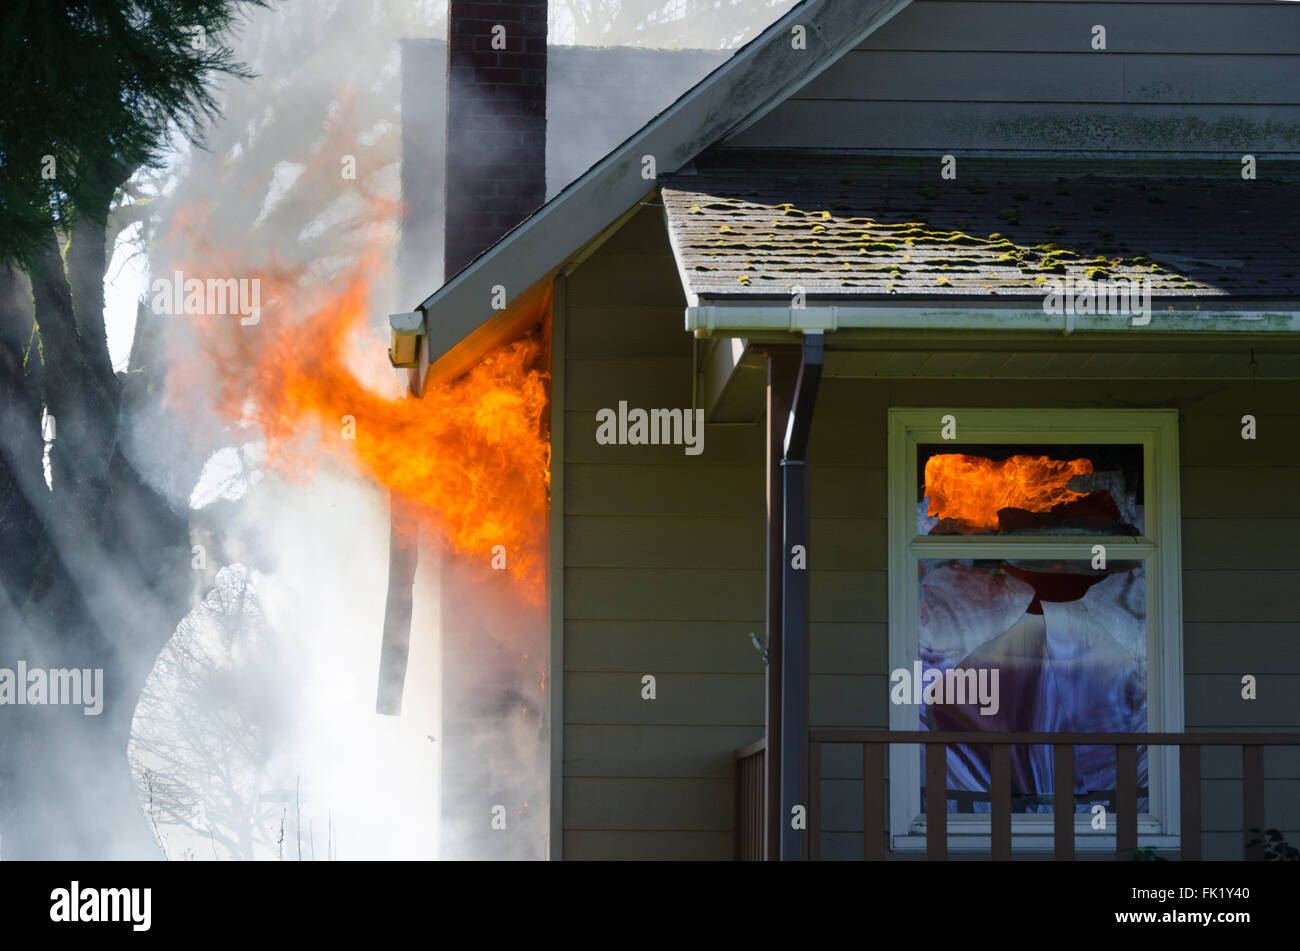 Lèche flambante de par la fenêtre d'une maison entourée d'une épaisse fumée noire Banque D'Images